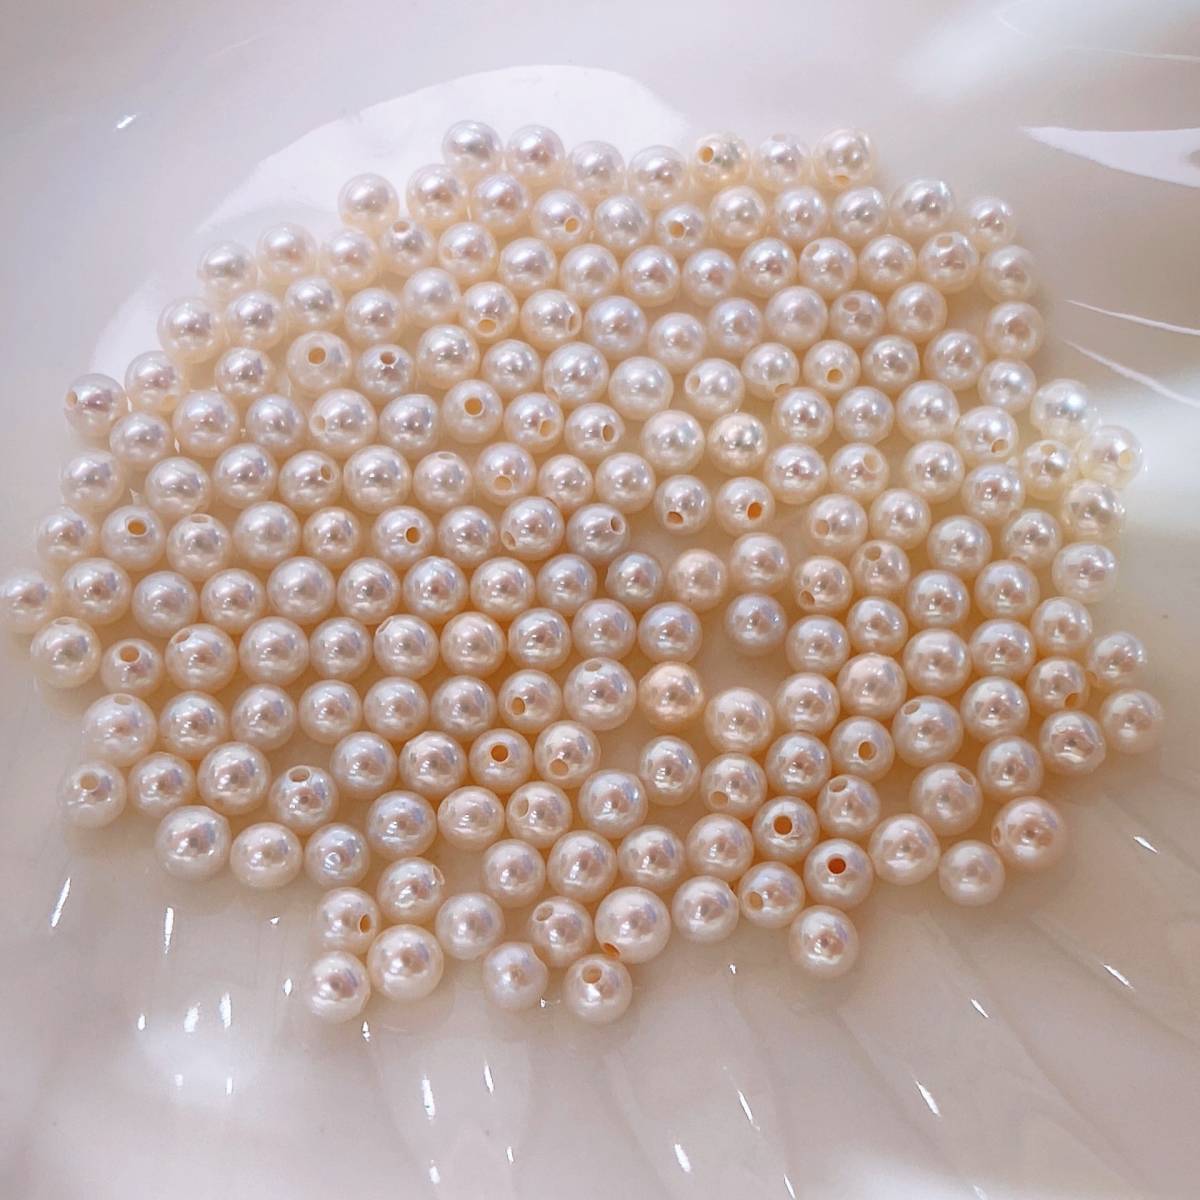 10個セット 天然本真珠 淡水パール 卸売り 4-4.5mm 淡水珍珠 超綺麗 裸 真珠 DIY 白 人気の真珠 超レア ジュエリー zz05_画像3